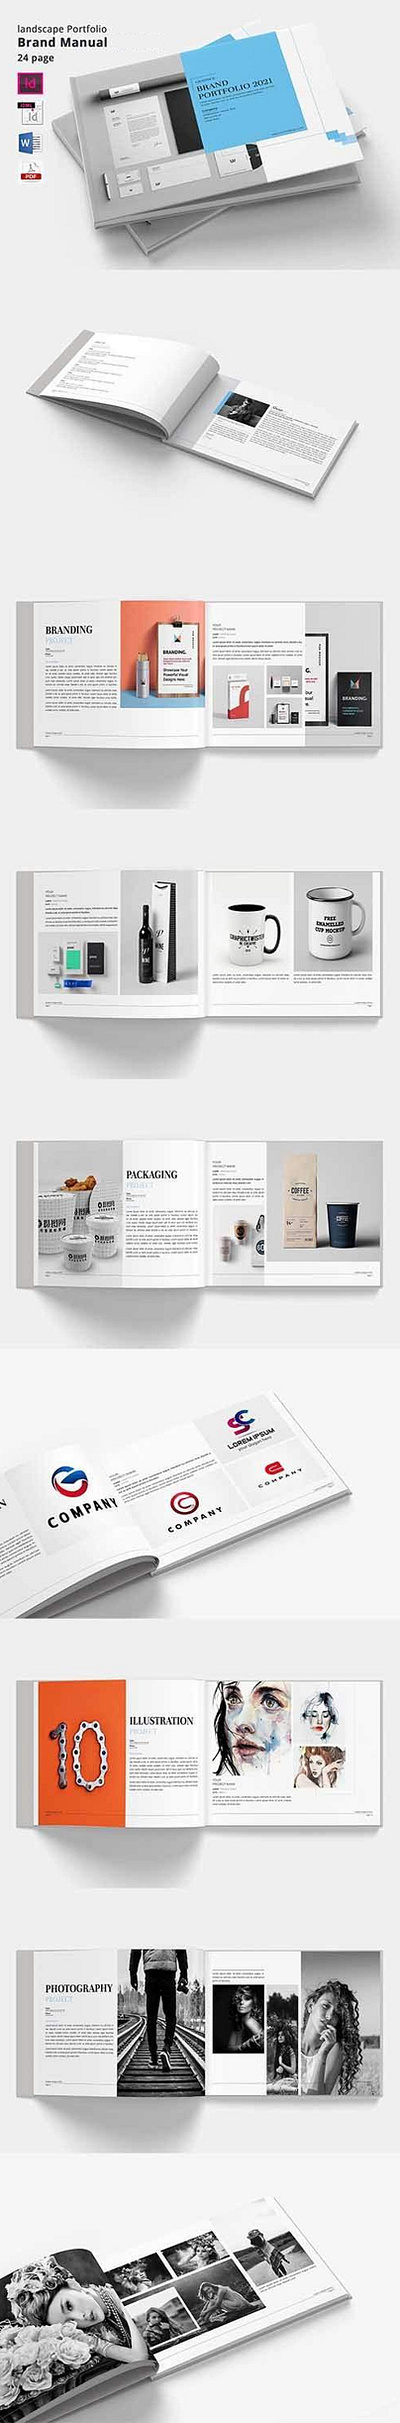 Graphic Design Portfolio brand branding design graphic design illustration